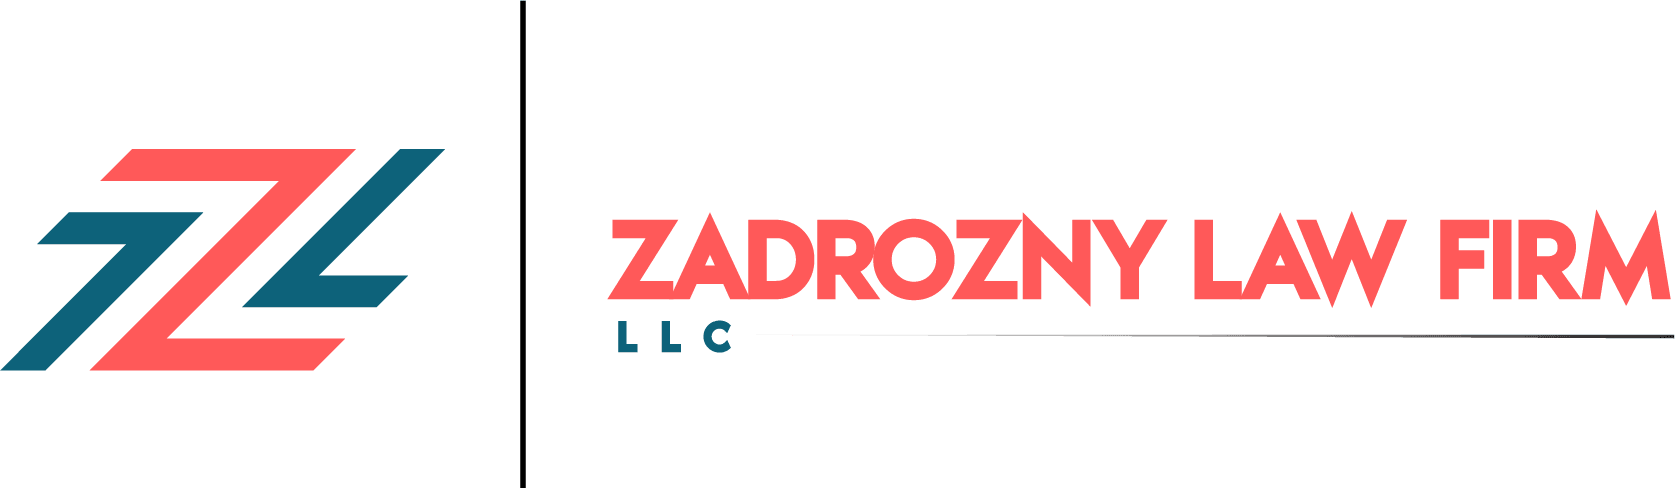 Zadrozny Law Firm LLC